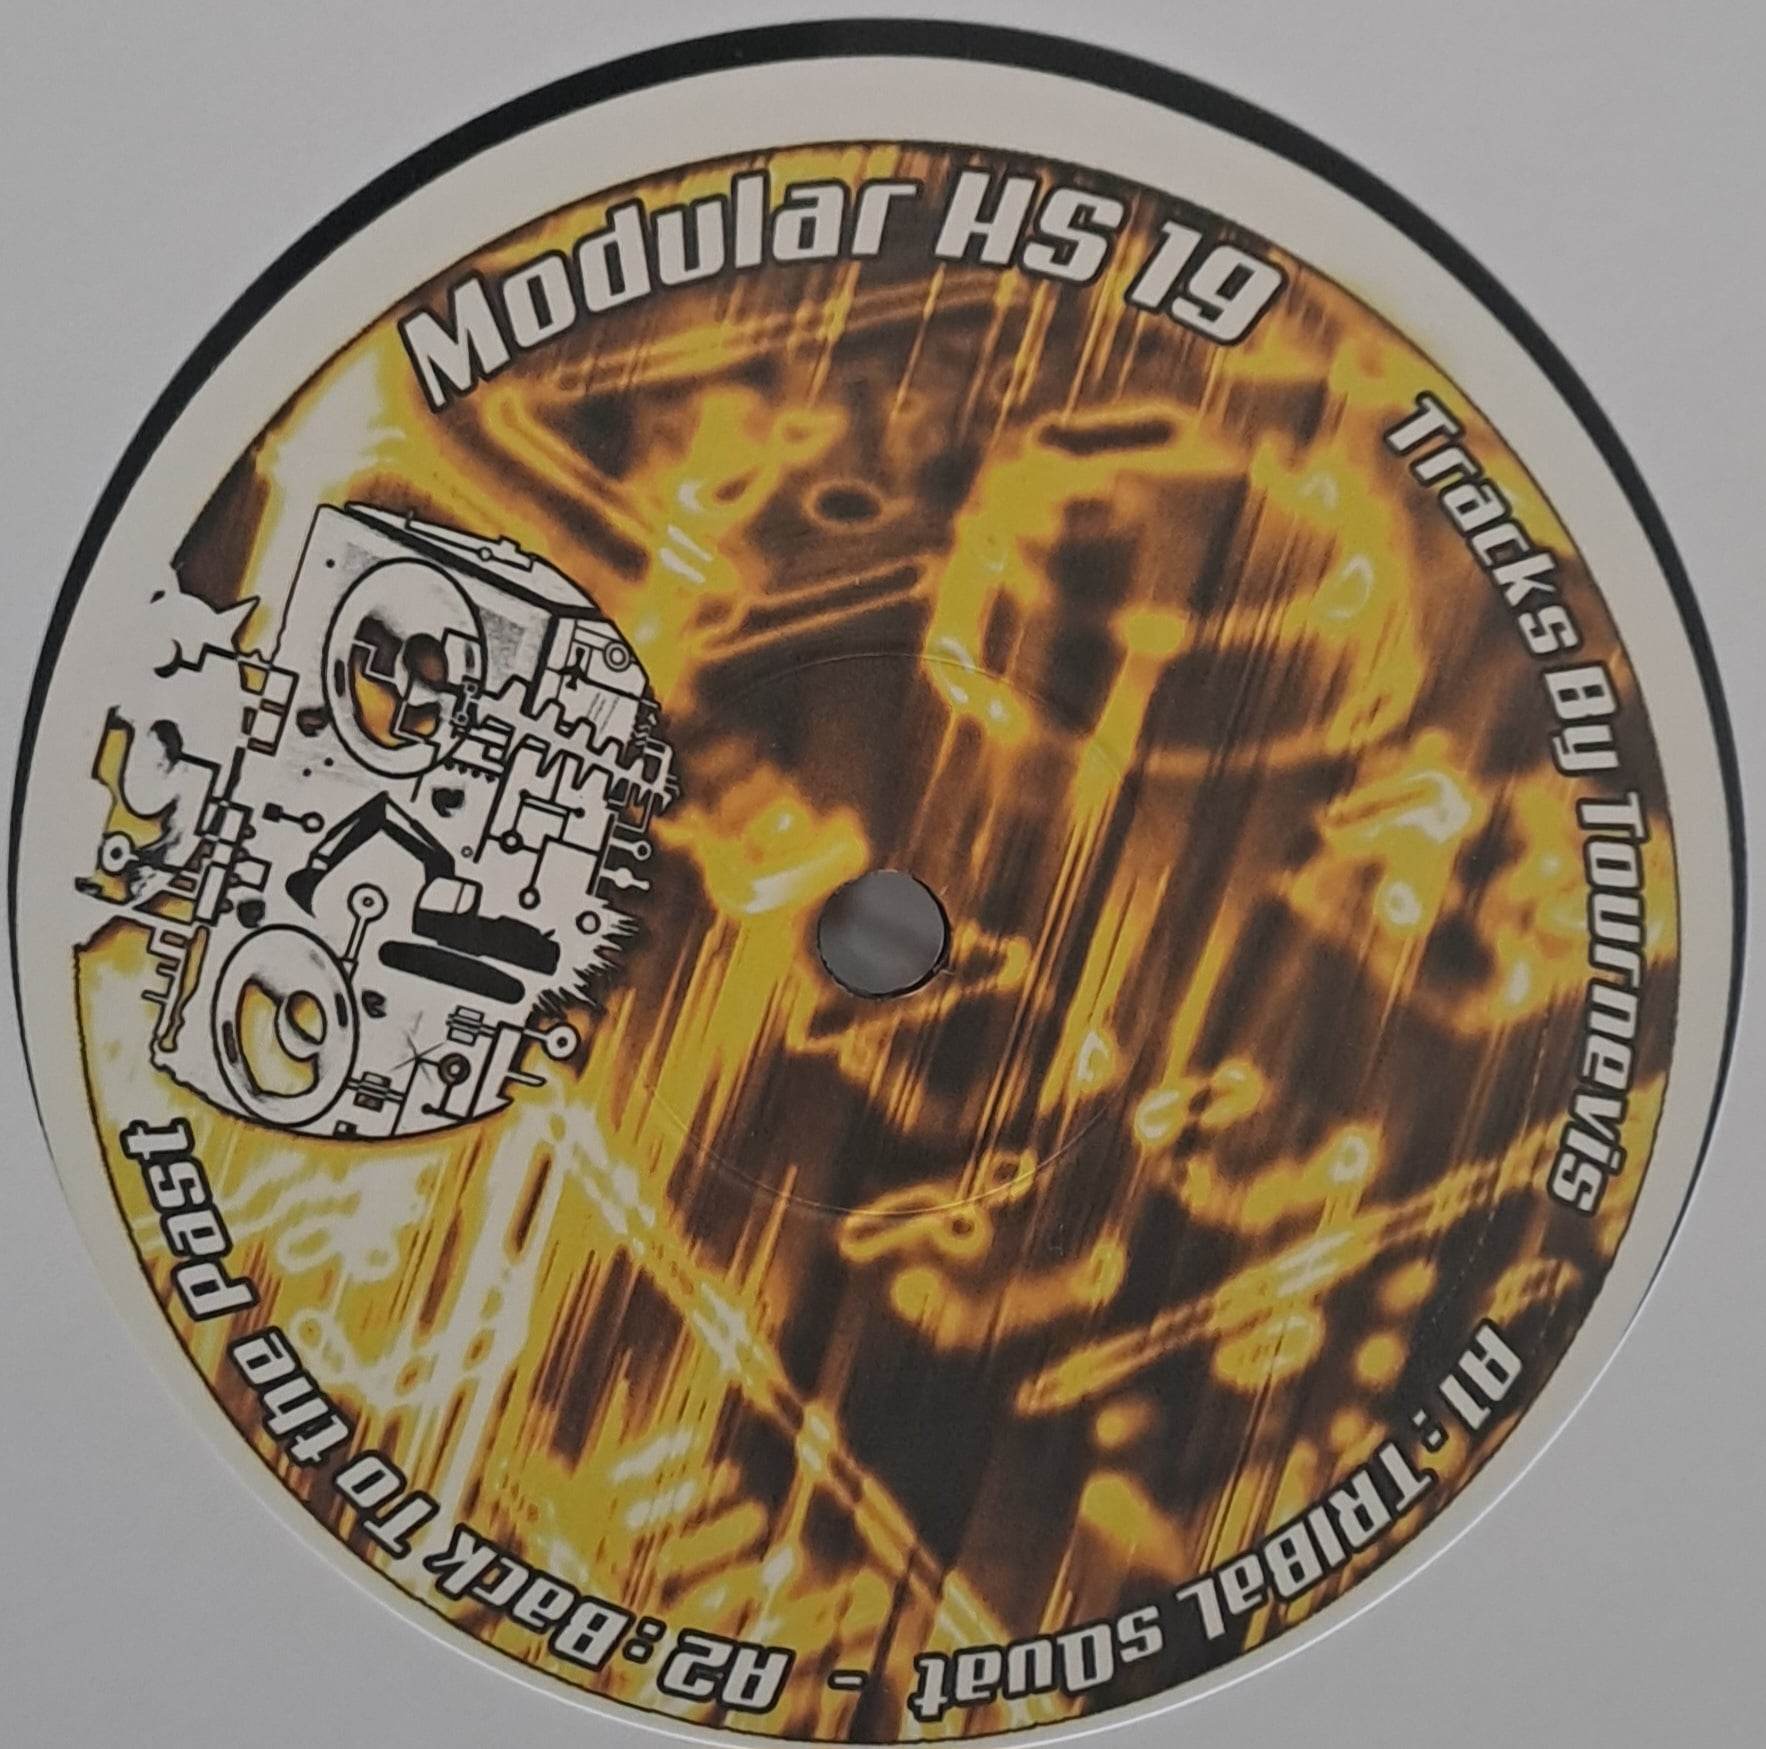 Modular HS 19 (dernières copies en stock) - vinyle freetekno